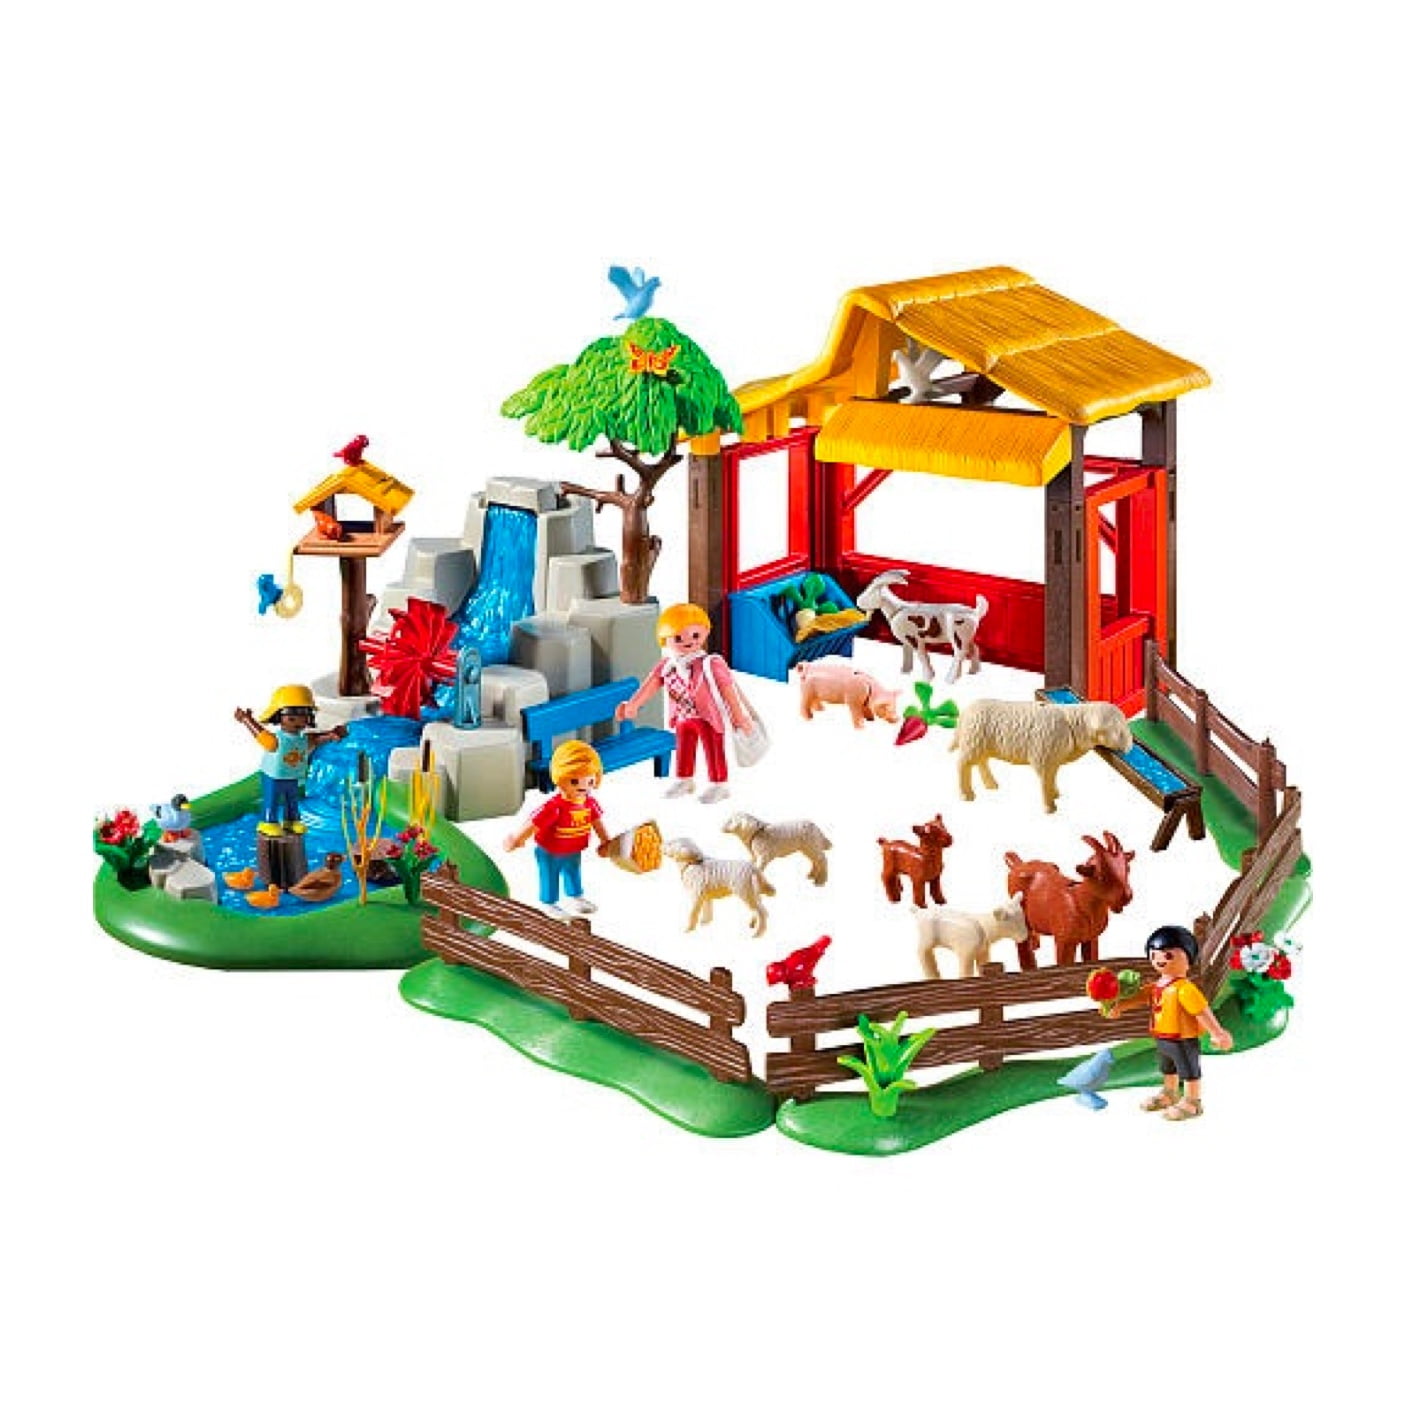 Playmobil 4851 - Lauksaimniecība ar dzīvniekiem